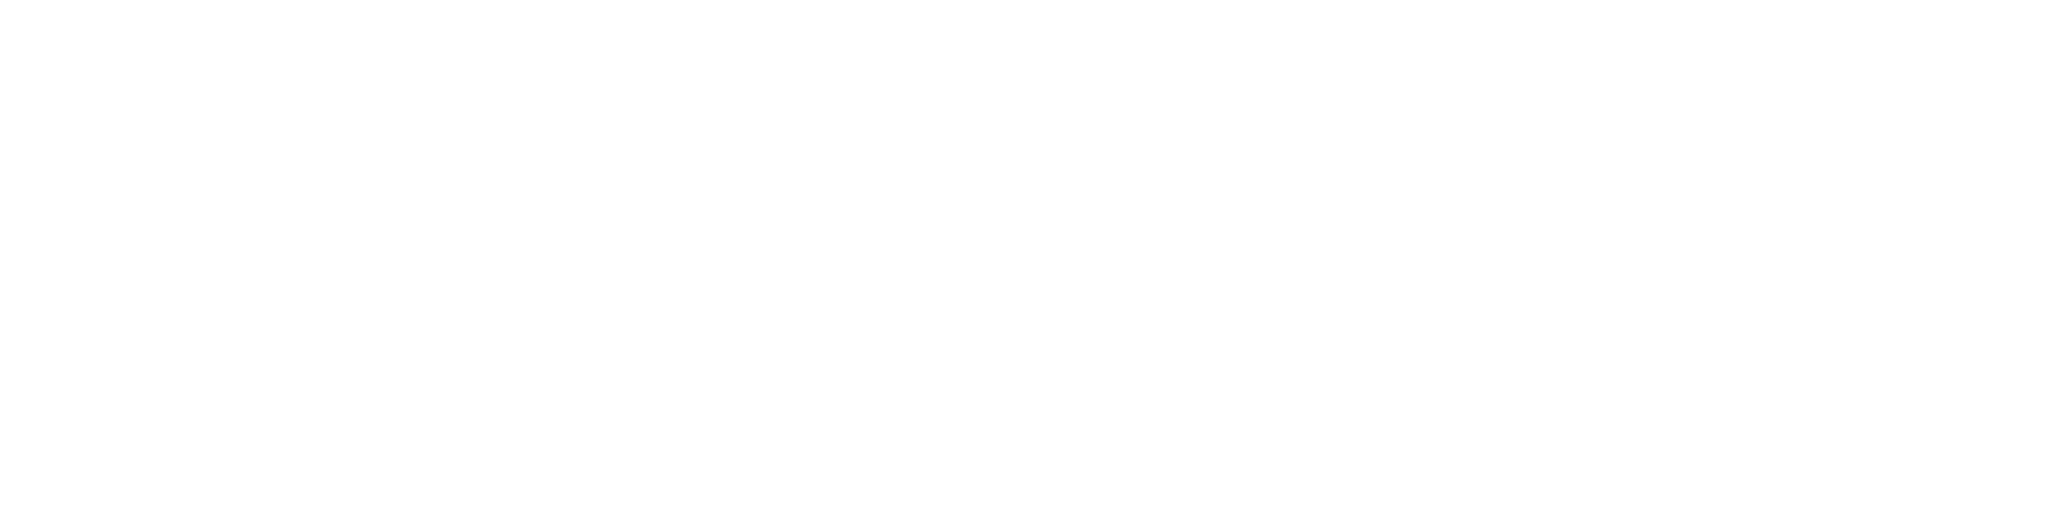 TwitchView Logo